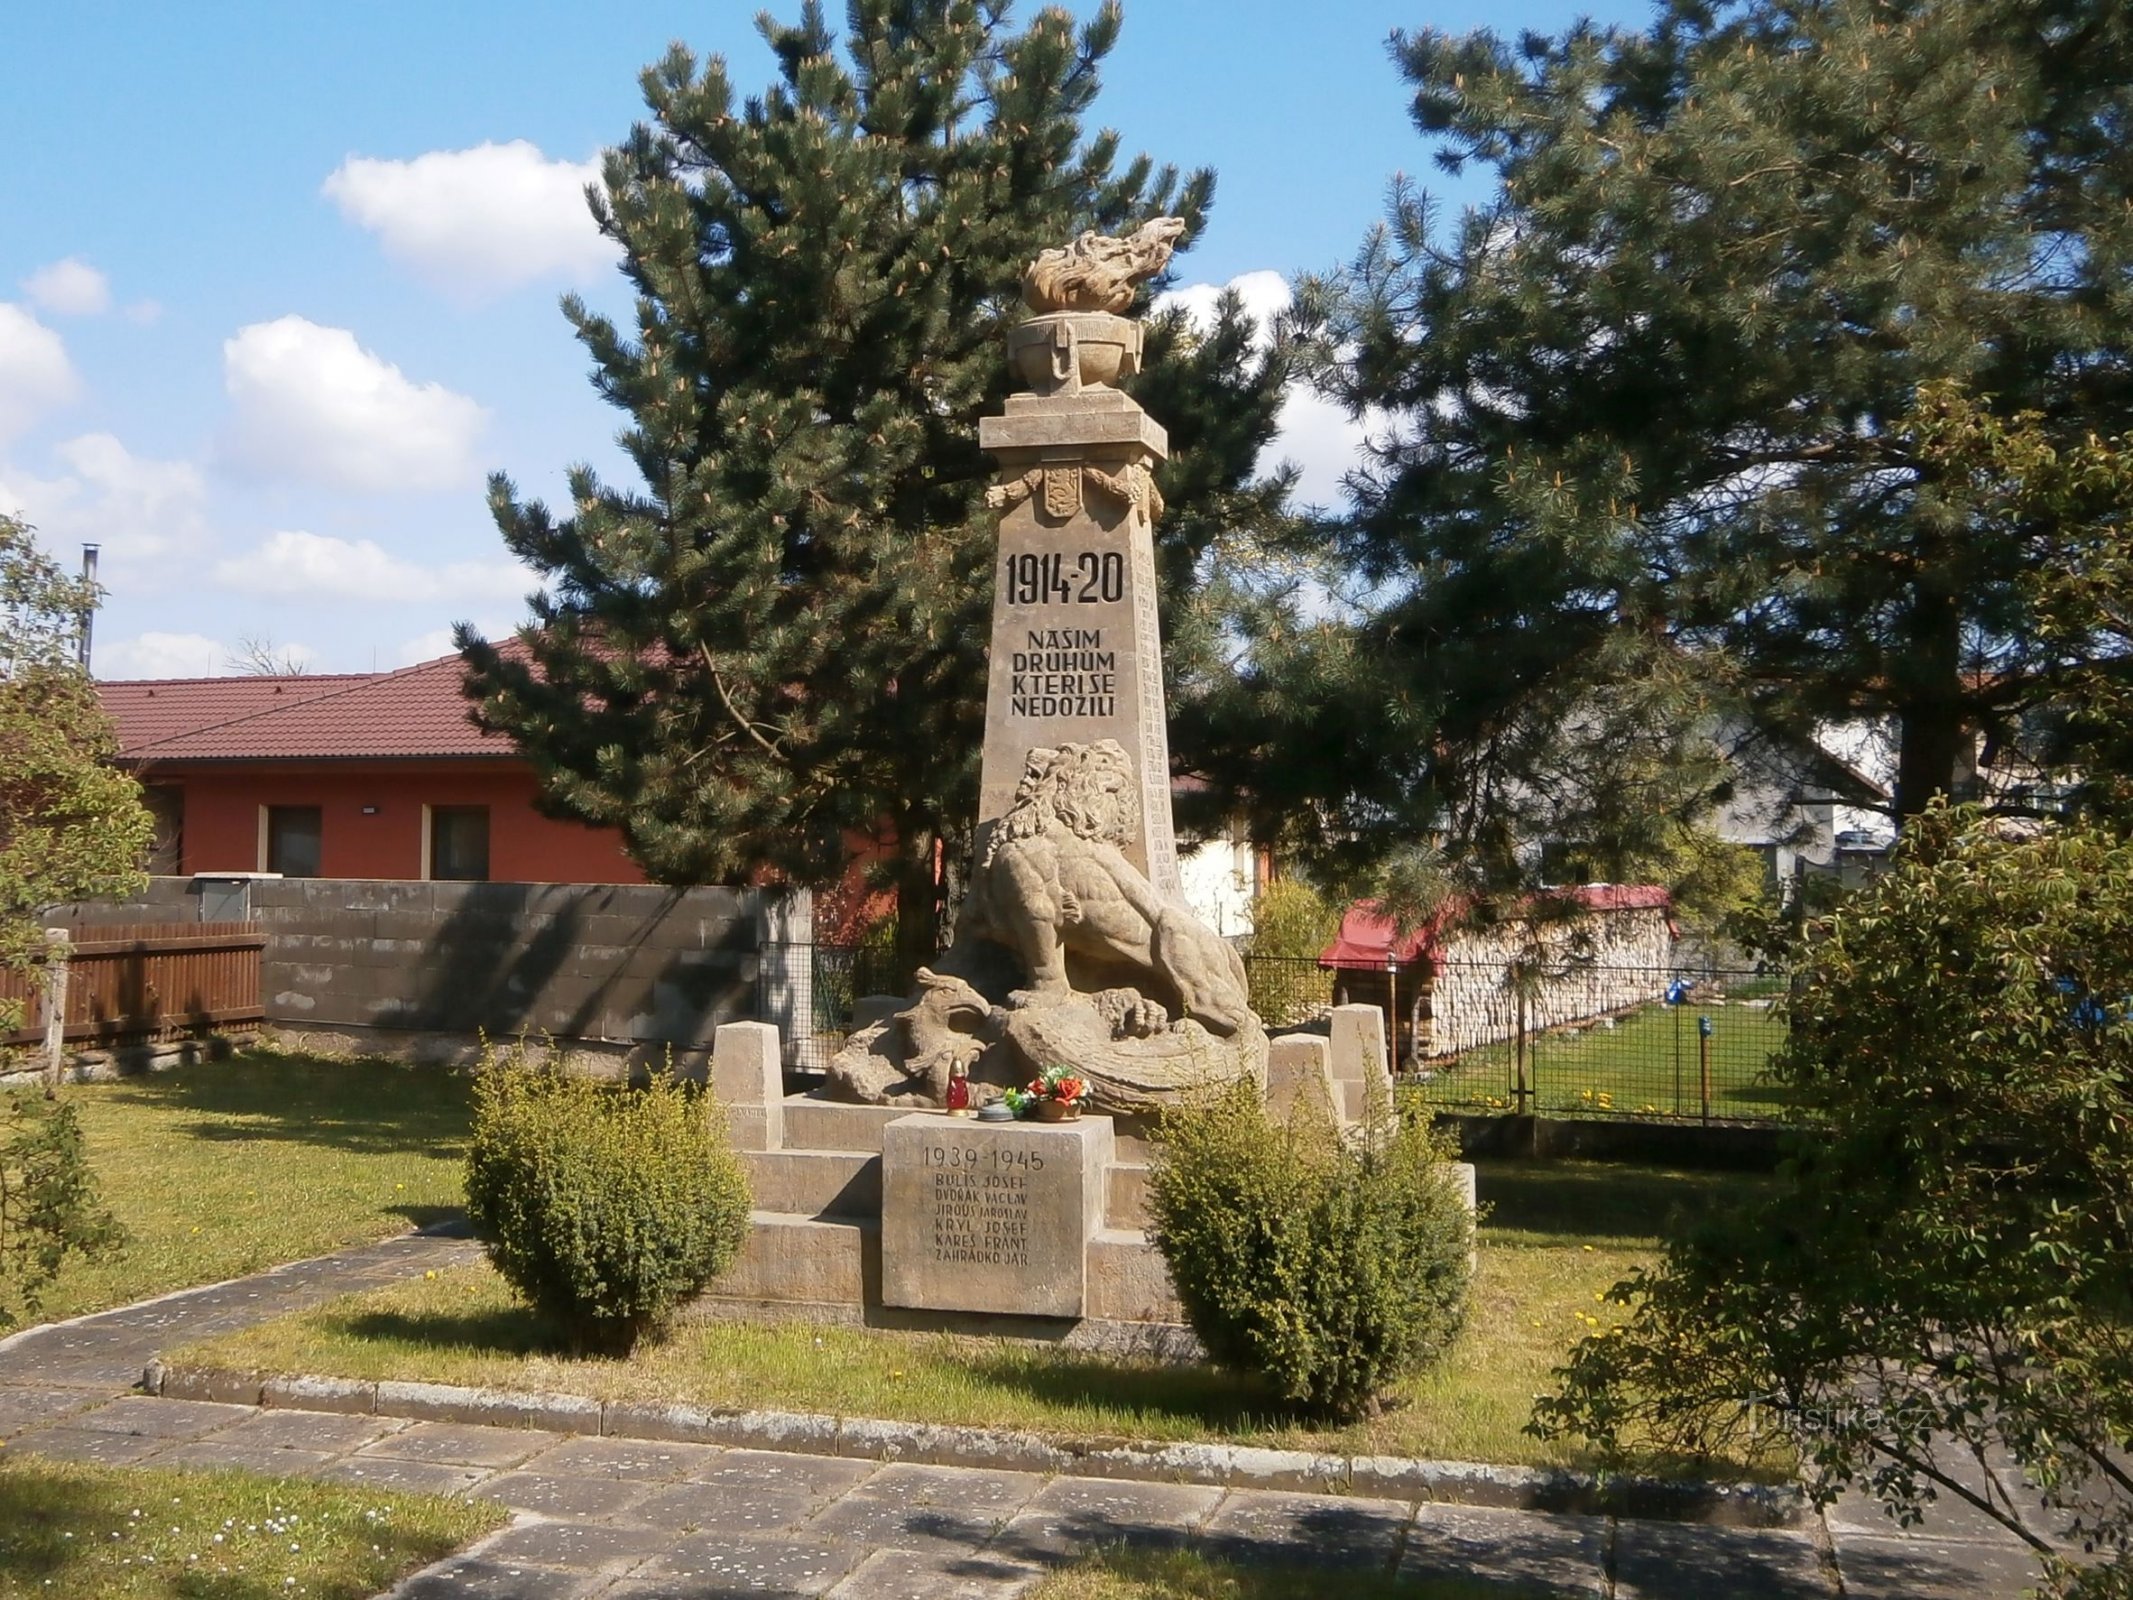 Monumento a los caídos (Černilov, 30.4.2017/XNUMX/XNUMX)